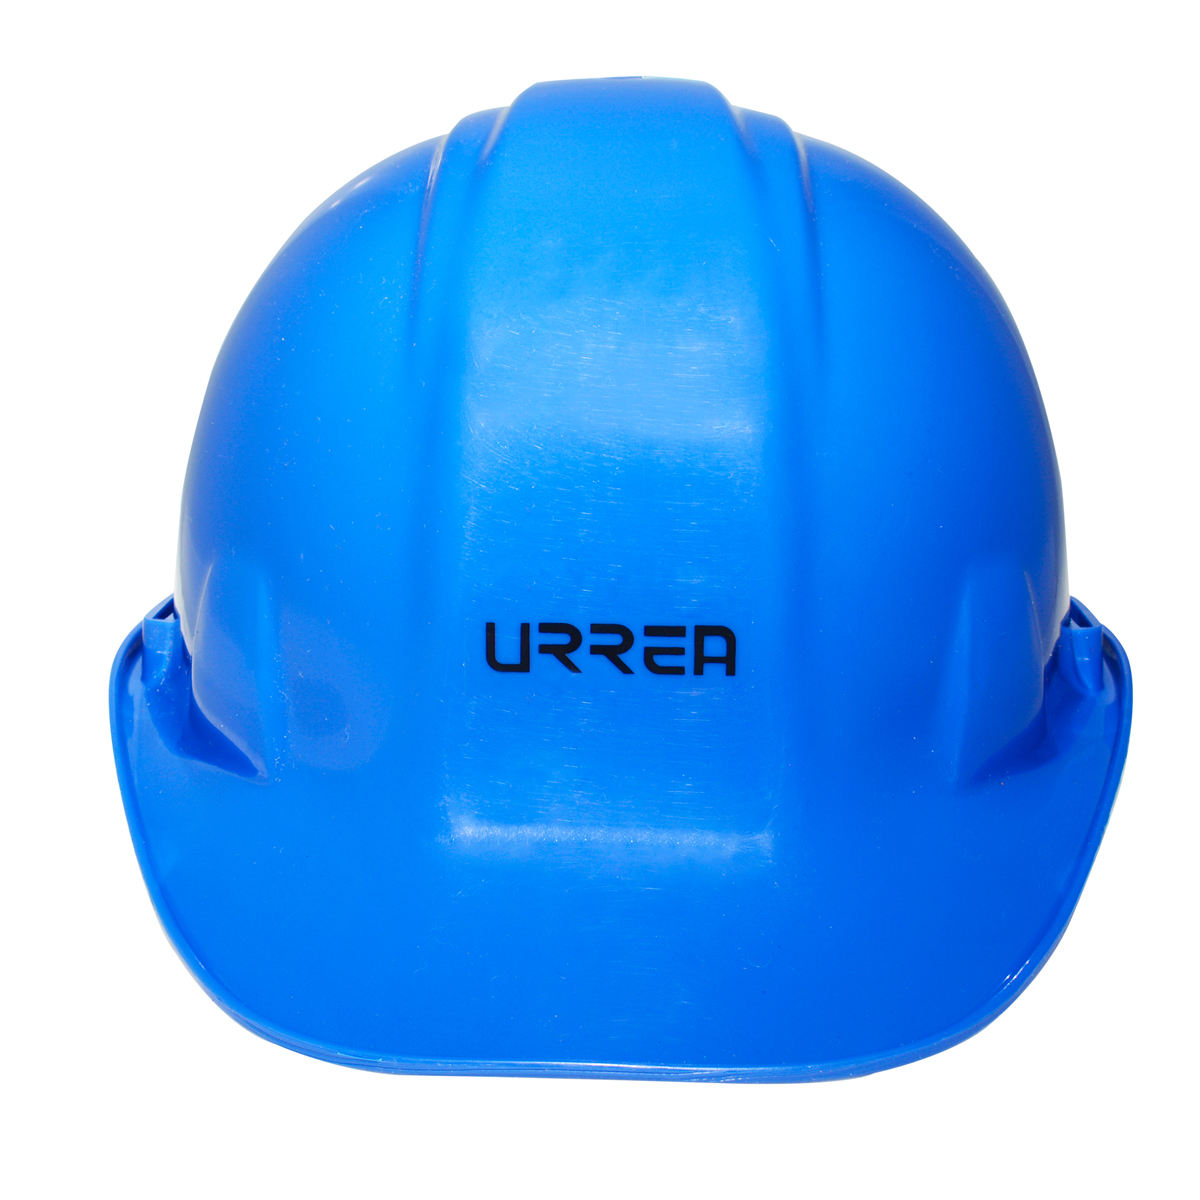 Imagen para Casco de seguridad con ajustede 4 puntos, color azul de Grupo Urrea